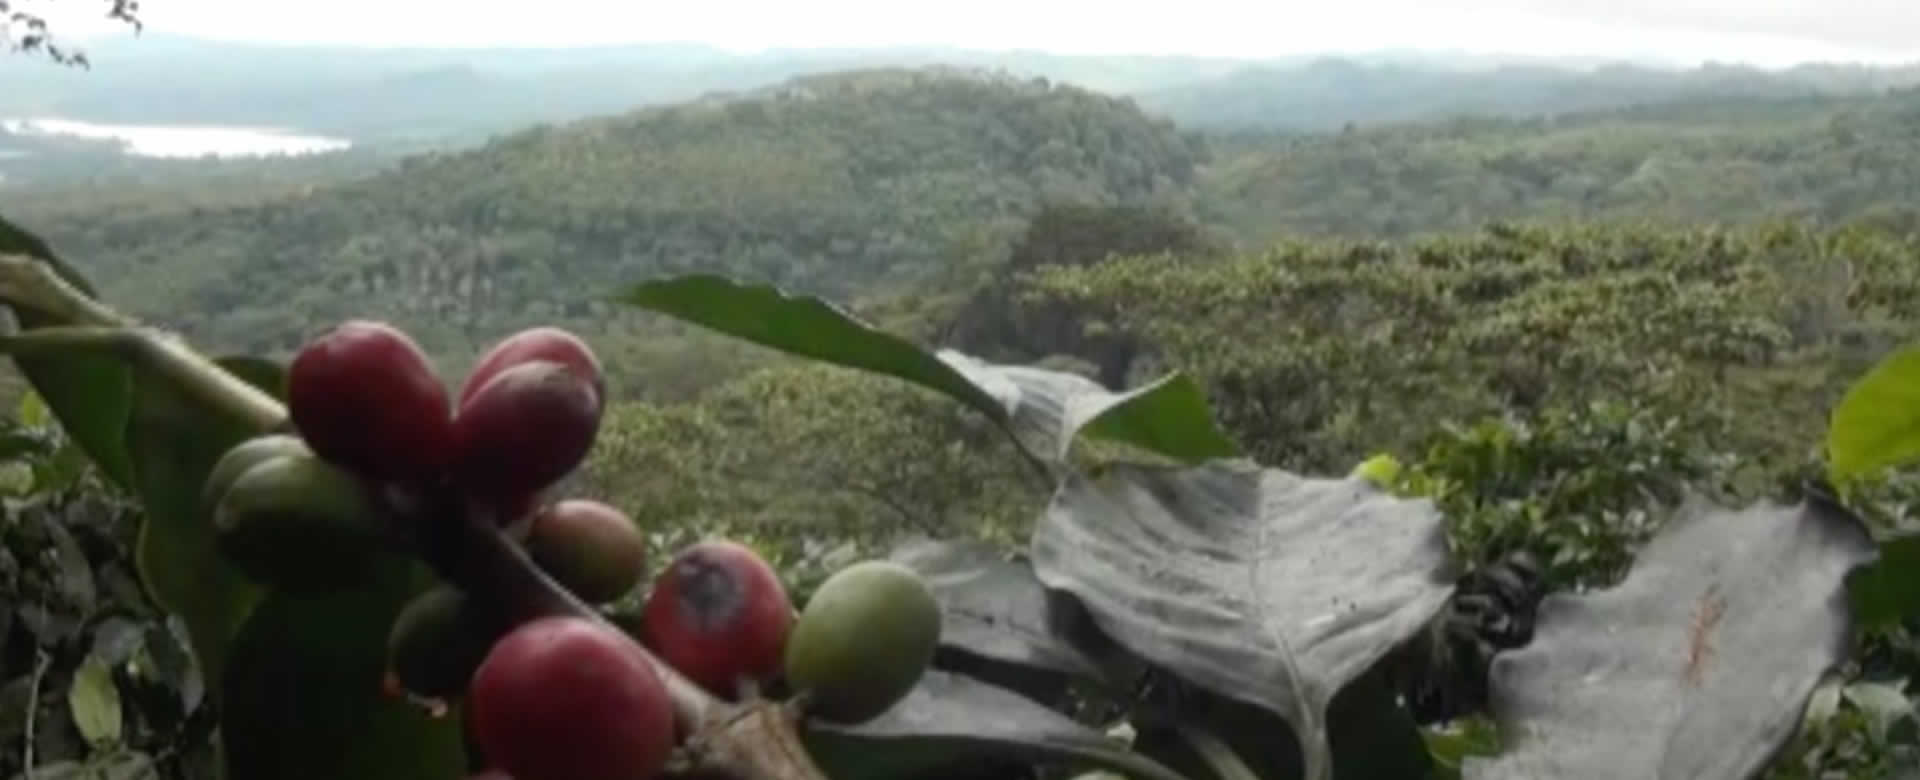 Finca Santa Rita cosecha agua para el cultivo de café y abastecer a las familias aledañas de la zona